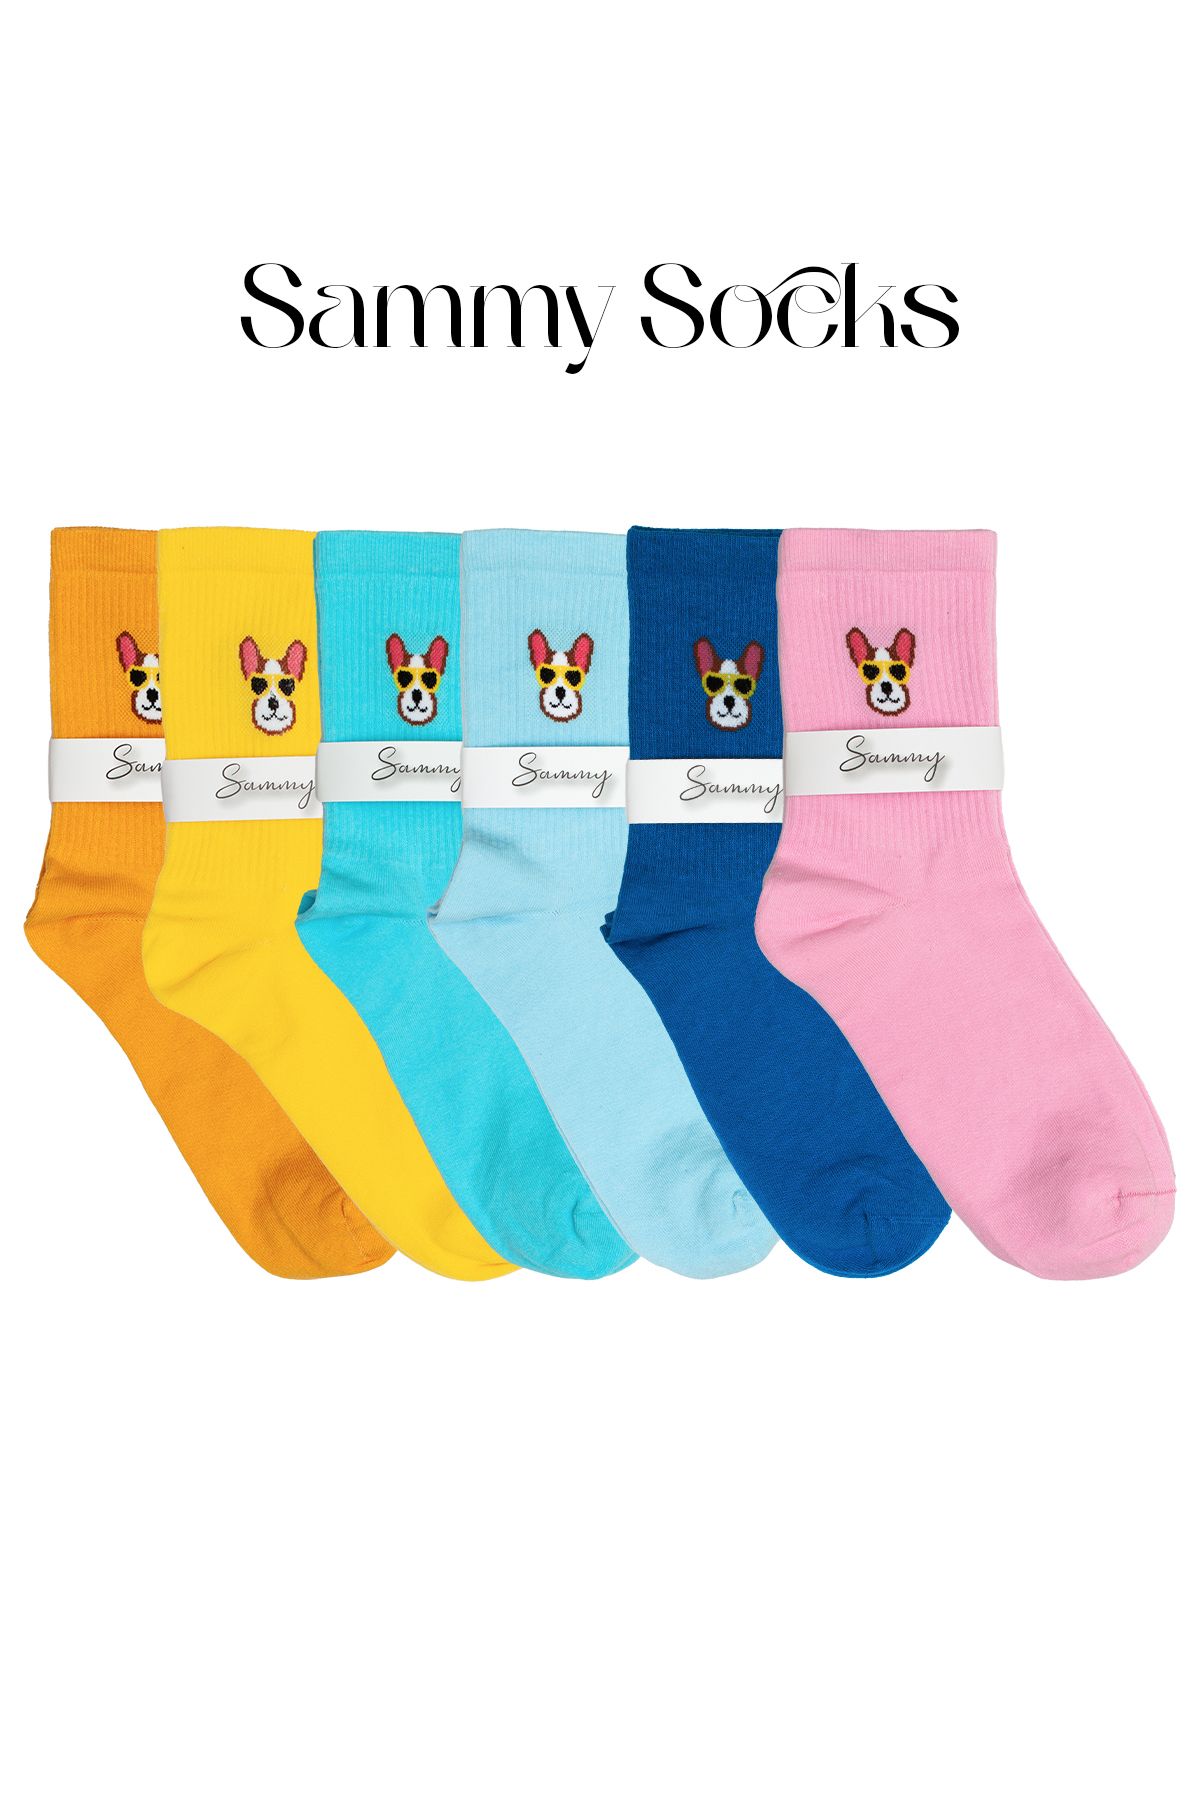 Sammy Socks Renkli Pamuklu Desenli Soket Unisex Çorap 6’lı